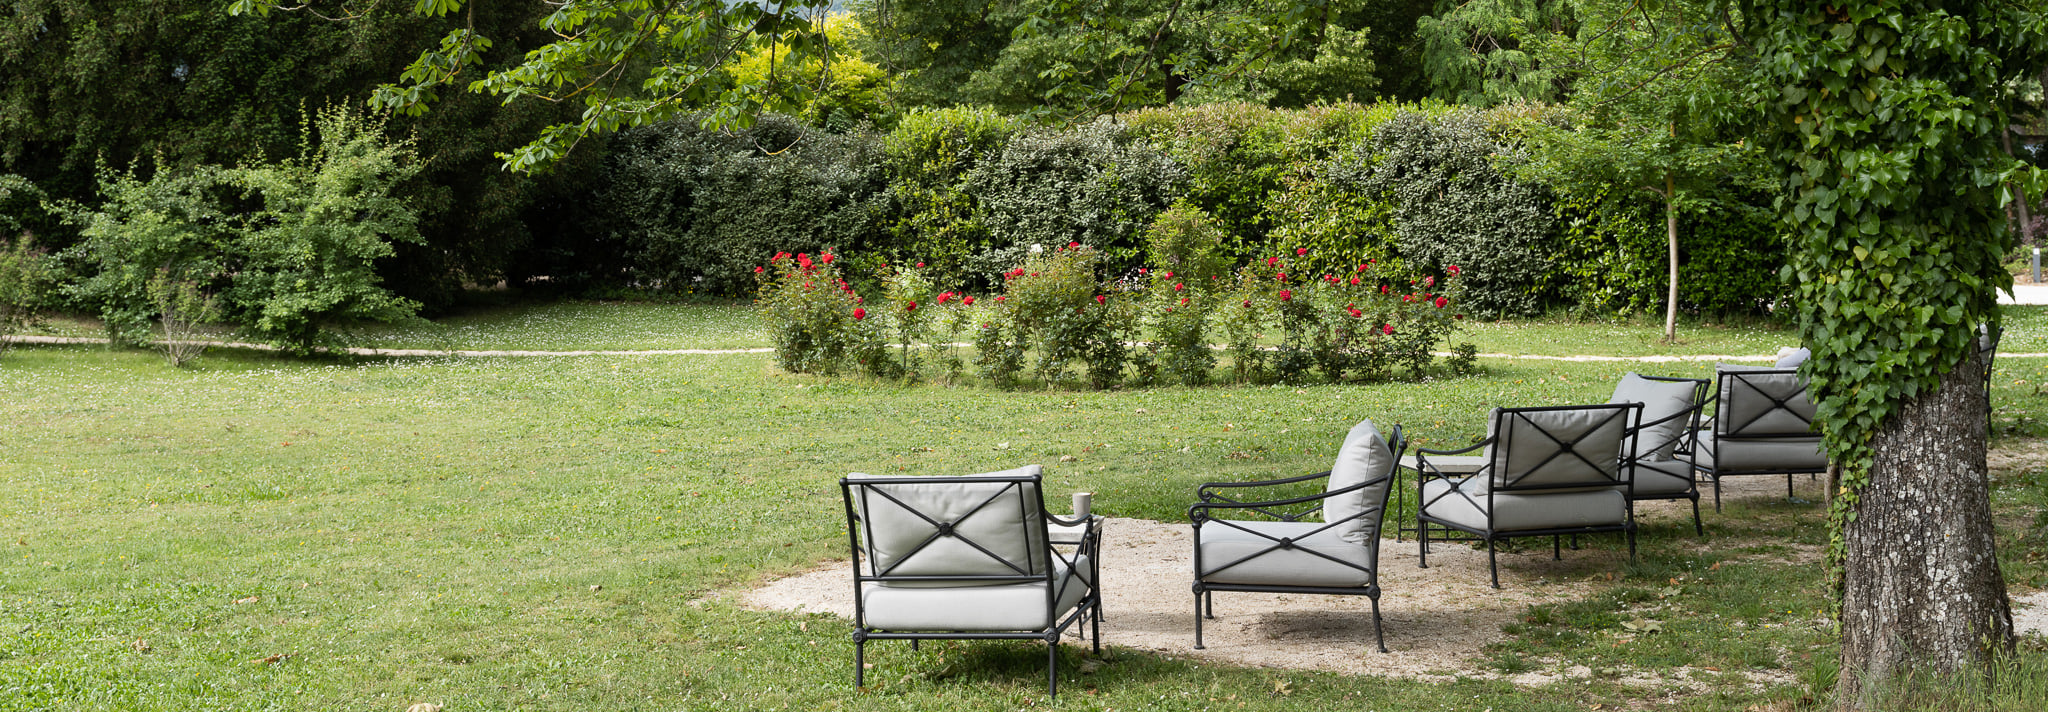 Zauberhafte Aussicht in den Schlosspark auf gemütlichen Sesseln unter den Kastanienbäumen im Schlosshotel Montcaud, Provence, Südfrankreich